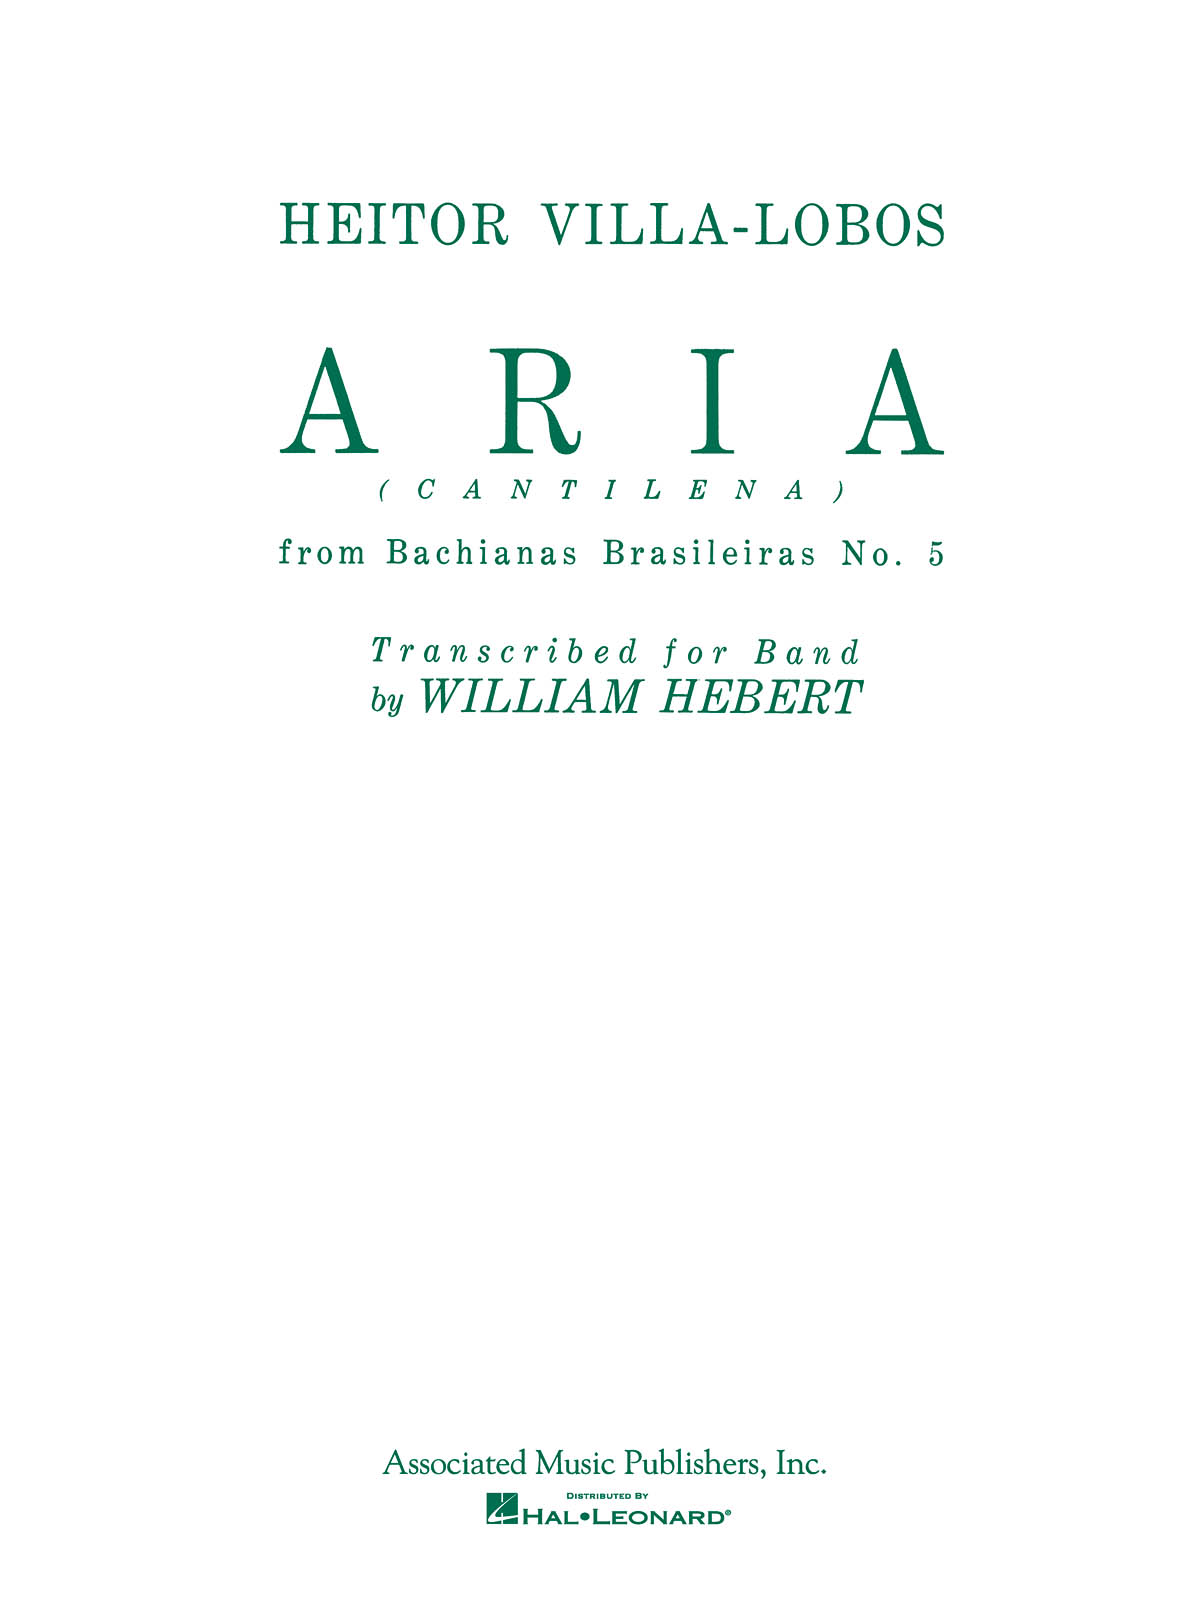 Heitor Villa-Lobos: Aria (Cantilena) from Bachianas Brasilieras No. 5: Concert